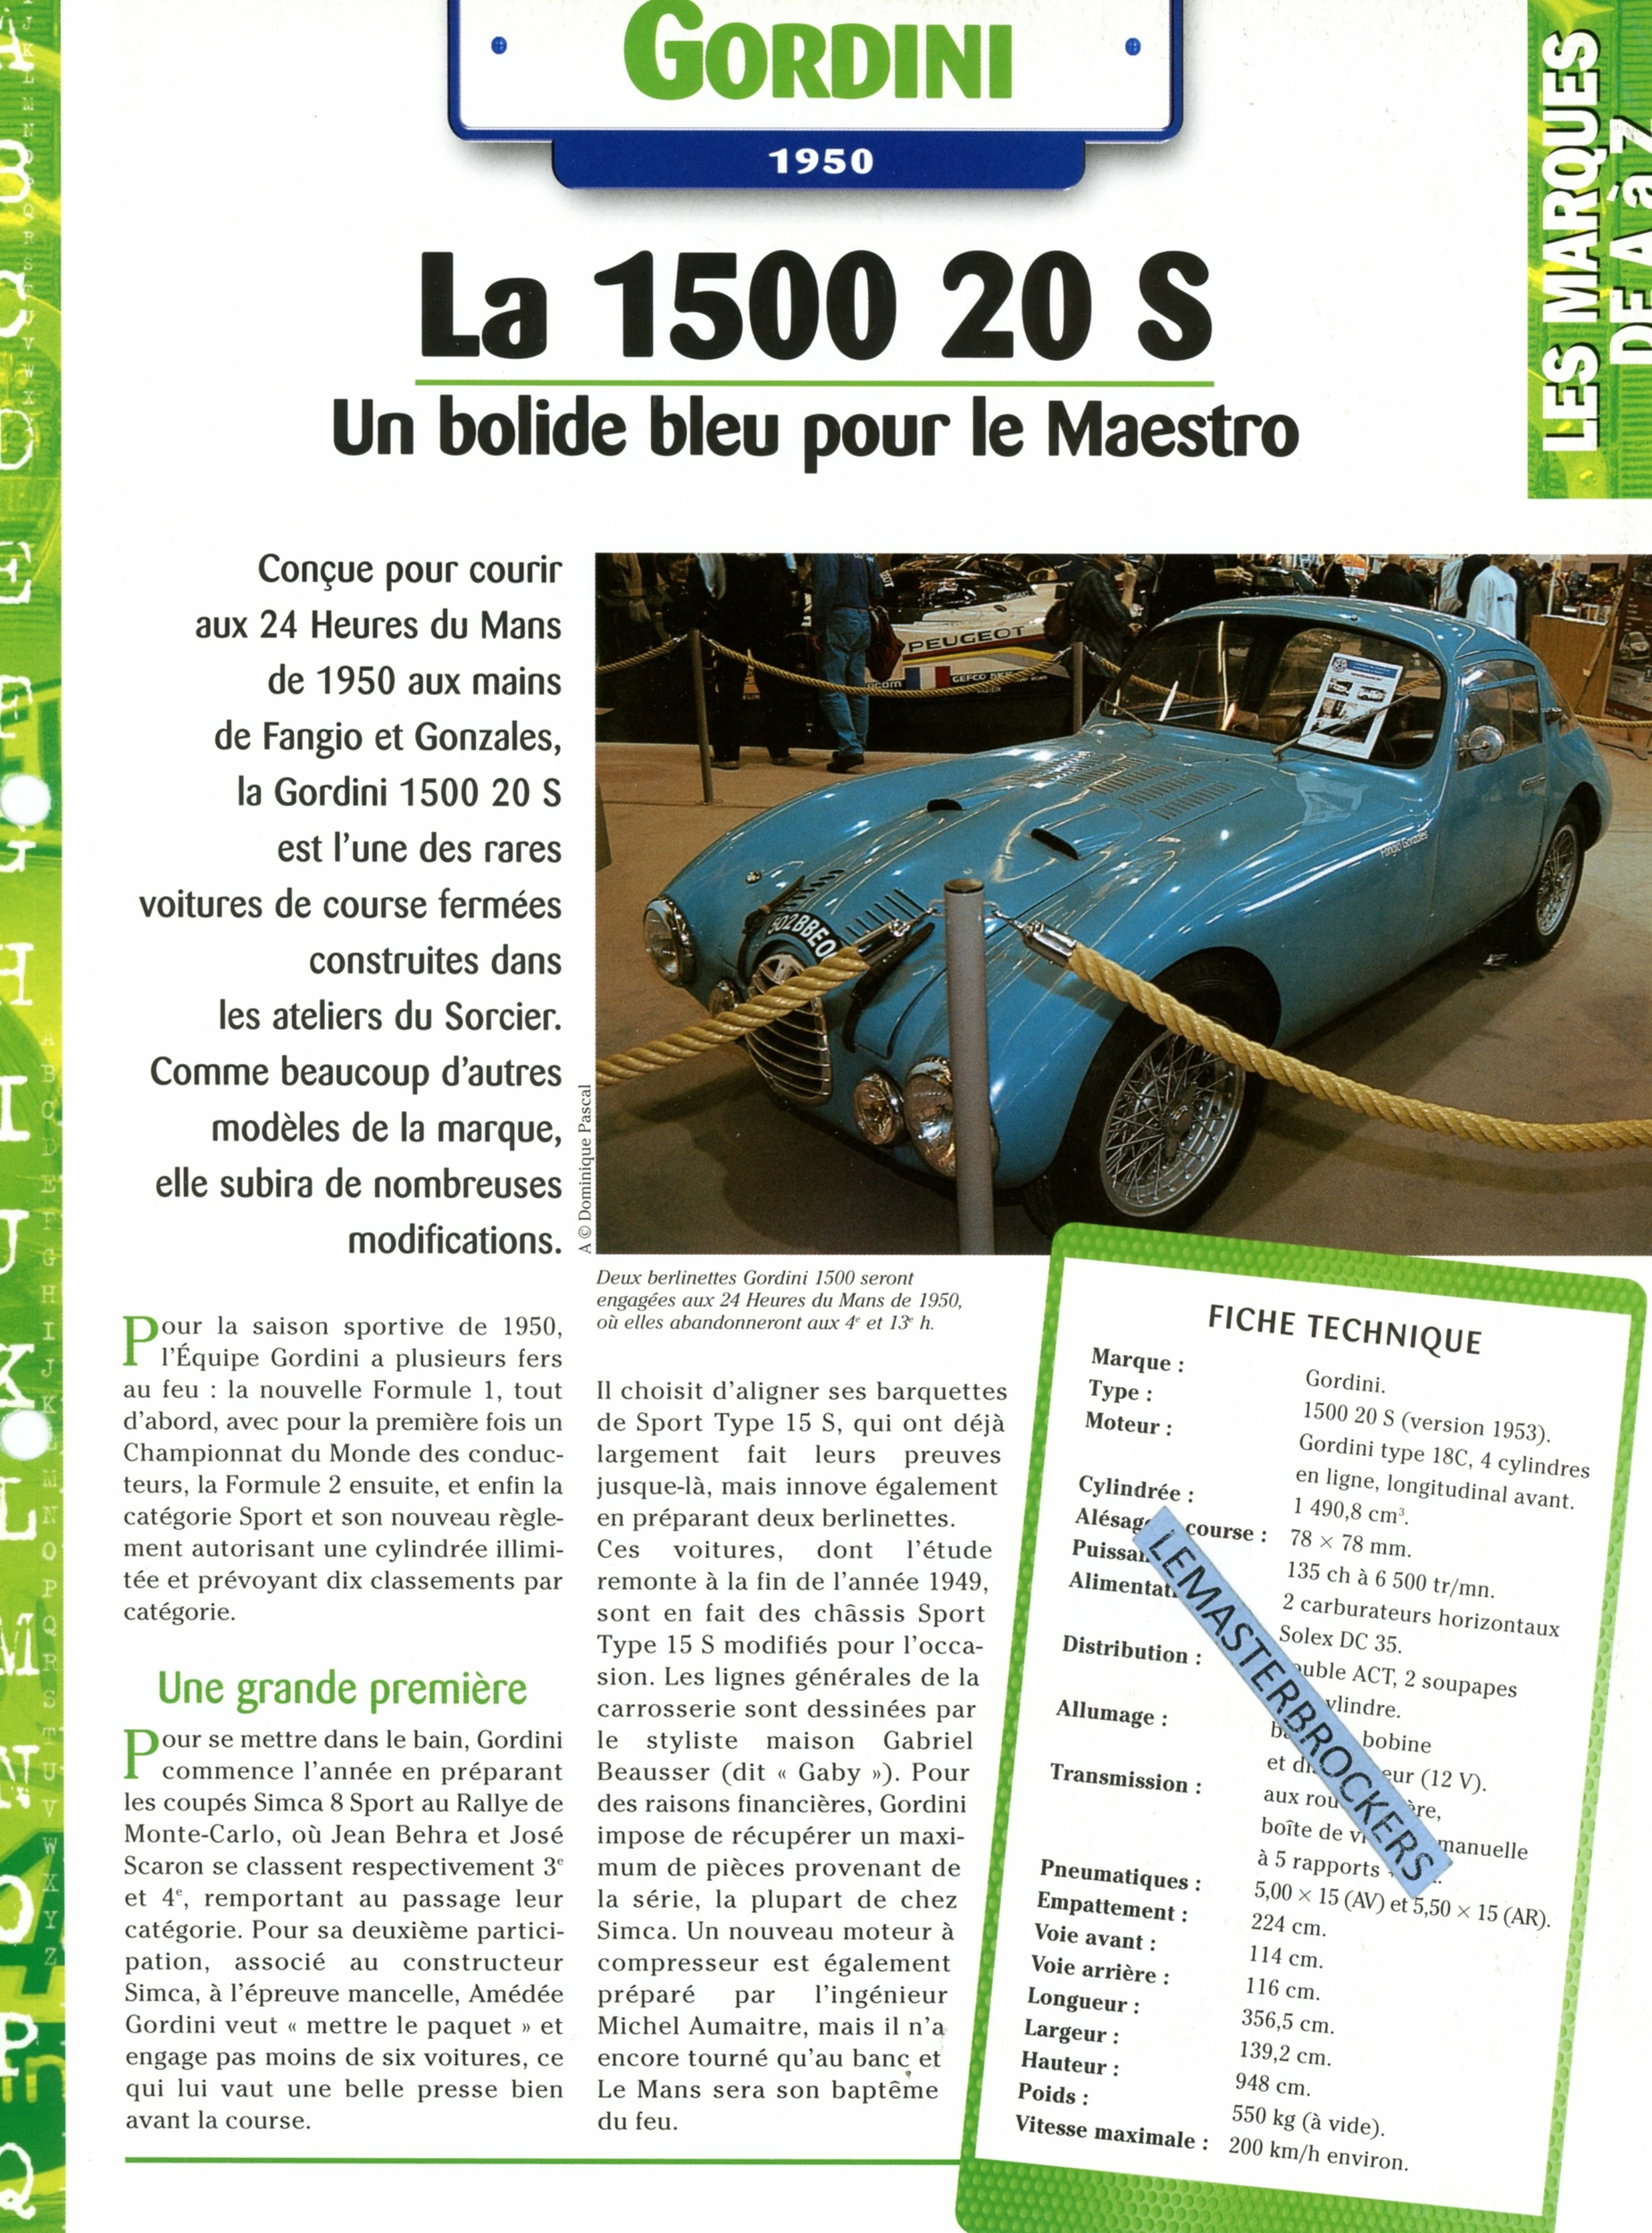 GORDINI-1500-20S-1950-1953-FICHE-AUTO-HACHETTE-LEMASTERBROCKERS